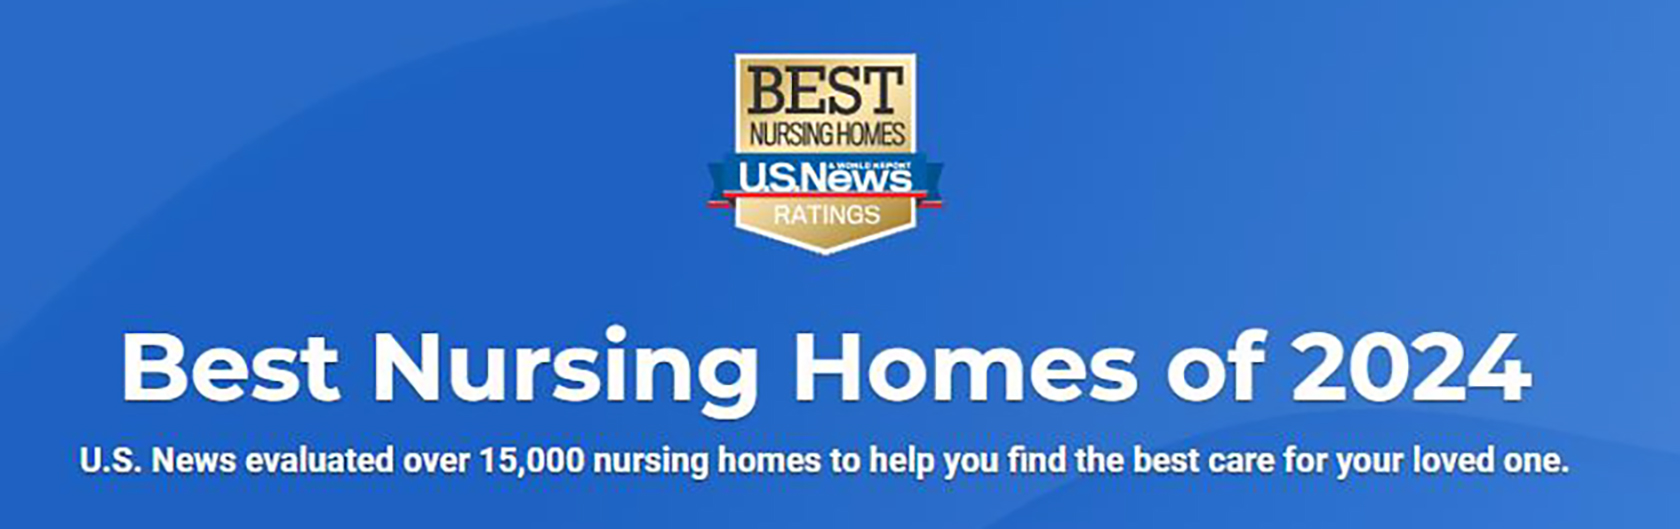 Blessing Best Nursing Homes 2023